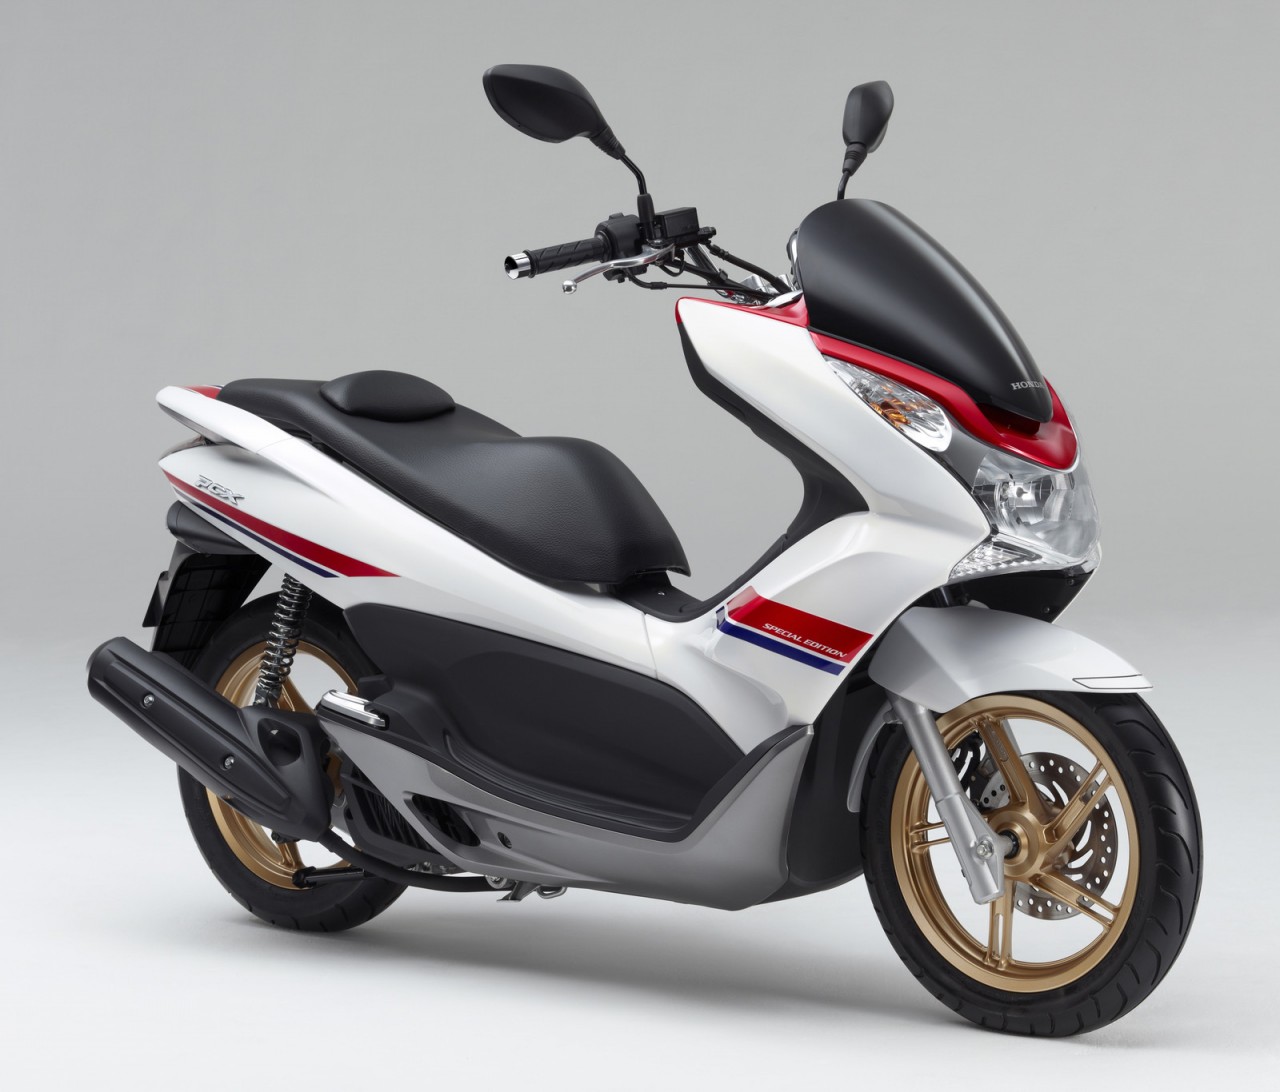 Honda 向本土市场推出pcx125 特别版 新车新品 资讯中心 全球摩托车网移动版 摩托车品牌 摩托车报价 摩托车之家 摩托车门户